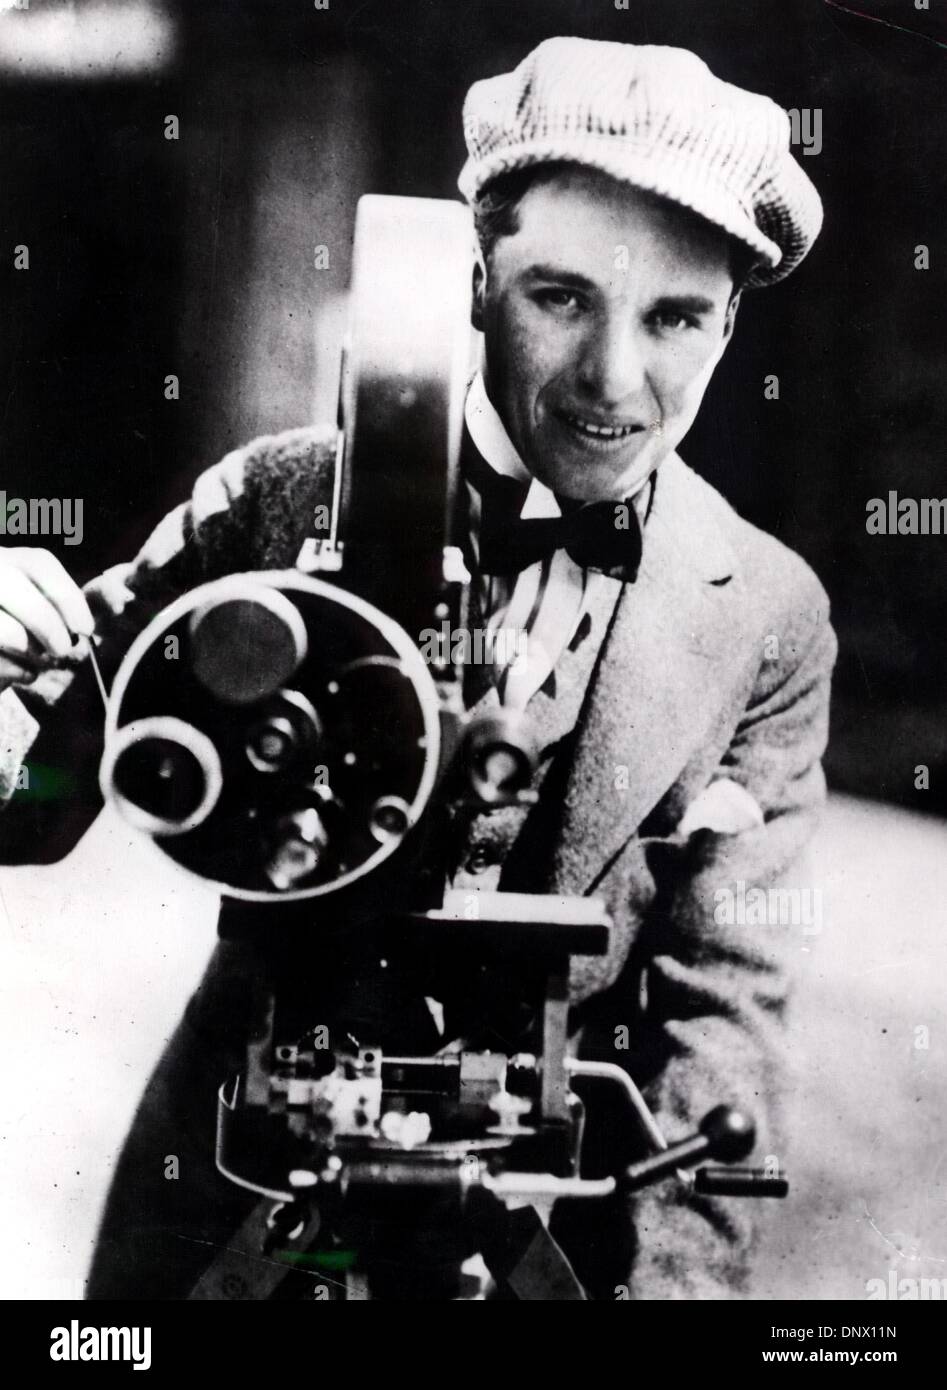 1. Januar 1915 - London, England, U.K - junge CHARLIE CHAPLIN (16. April 1889 - 25. Dezember 1977) mit einer Filmkamera. Chaplin war ein komischer Schauspieler und Regisseur am meisten bekannt für seine Arbeit in der Stummfilm-Ära. (Kredit-Bild: © KEYSTONE Pictures/ZUMAPRESS.com) Stockfoto